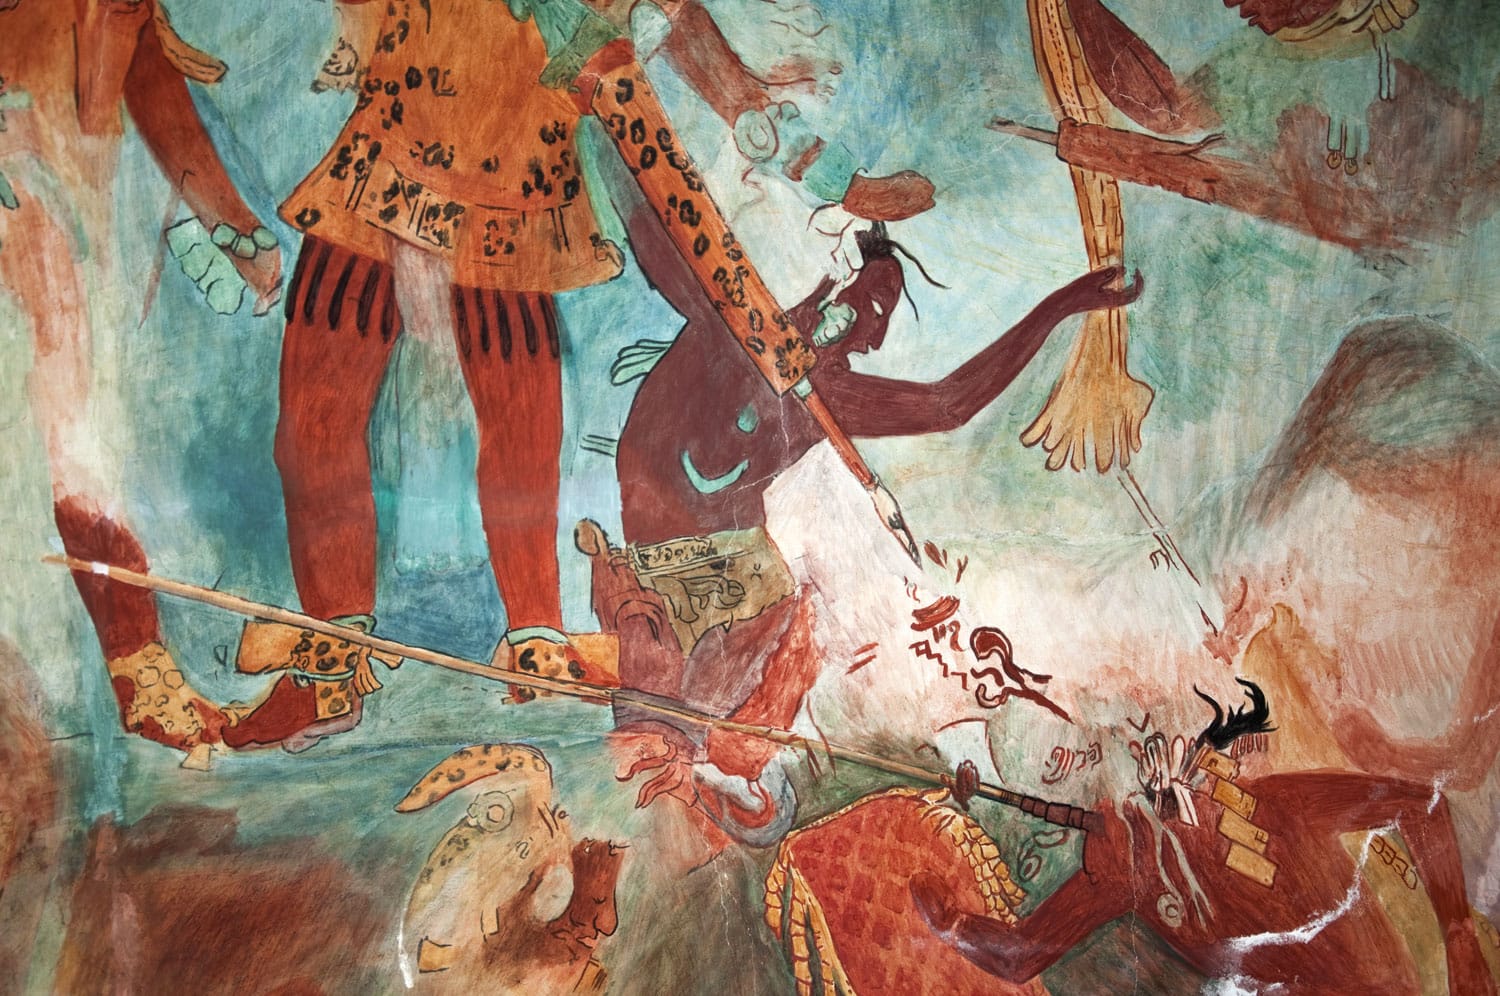 Τοιχογραφία των Μάγια από το Bonampak 03 Τοιχογραφία Αντίγραφο της αρχικής τοιχογραφίας που βρέθηκε στο "The Temple of the Murals" σε έναν αρχαίο αρχαιολογικό χώρο των Μάγια που ονομάζεται Bonampak στην Τσιάπας του Μεξικού